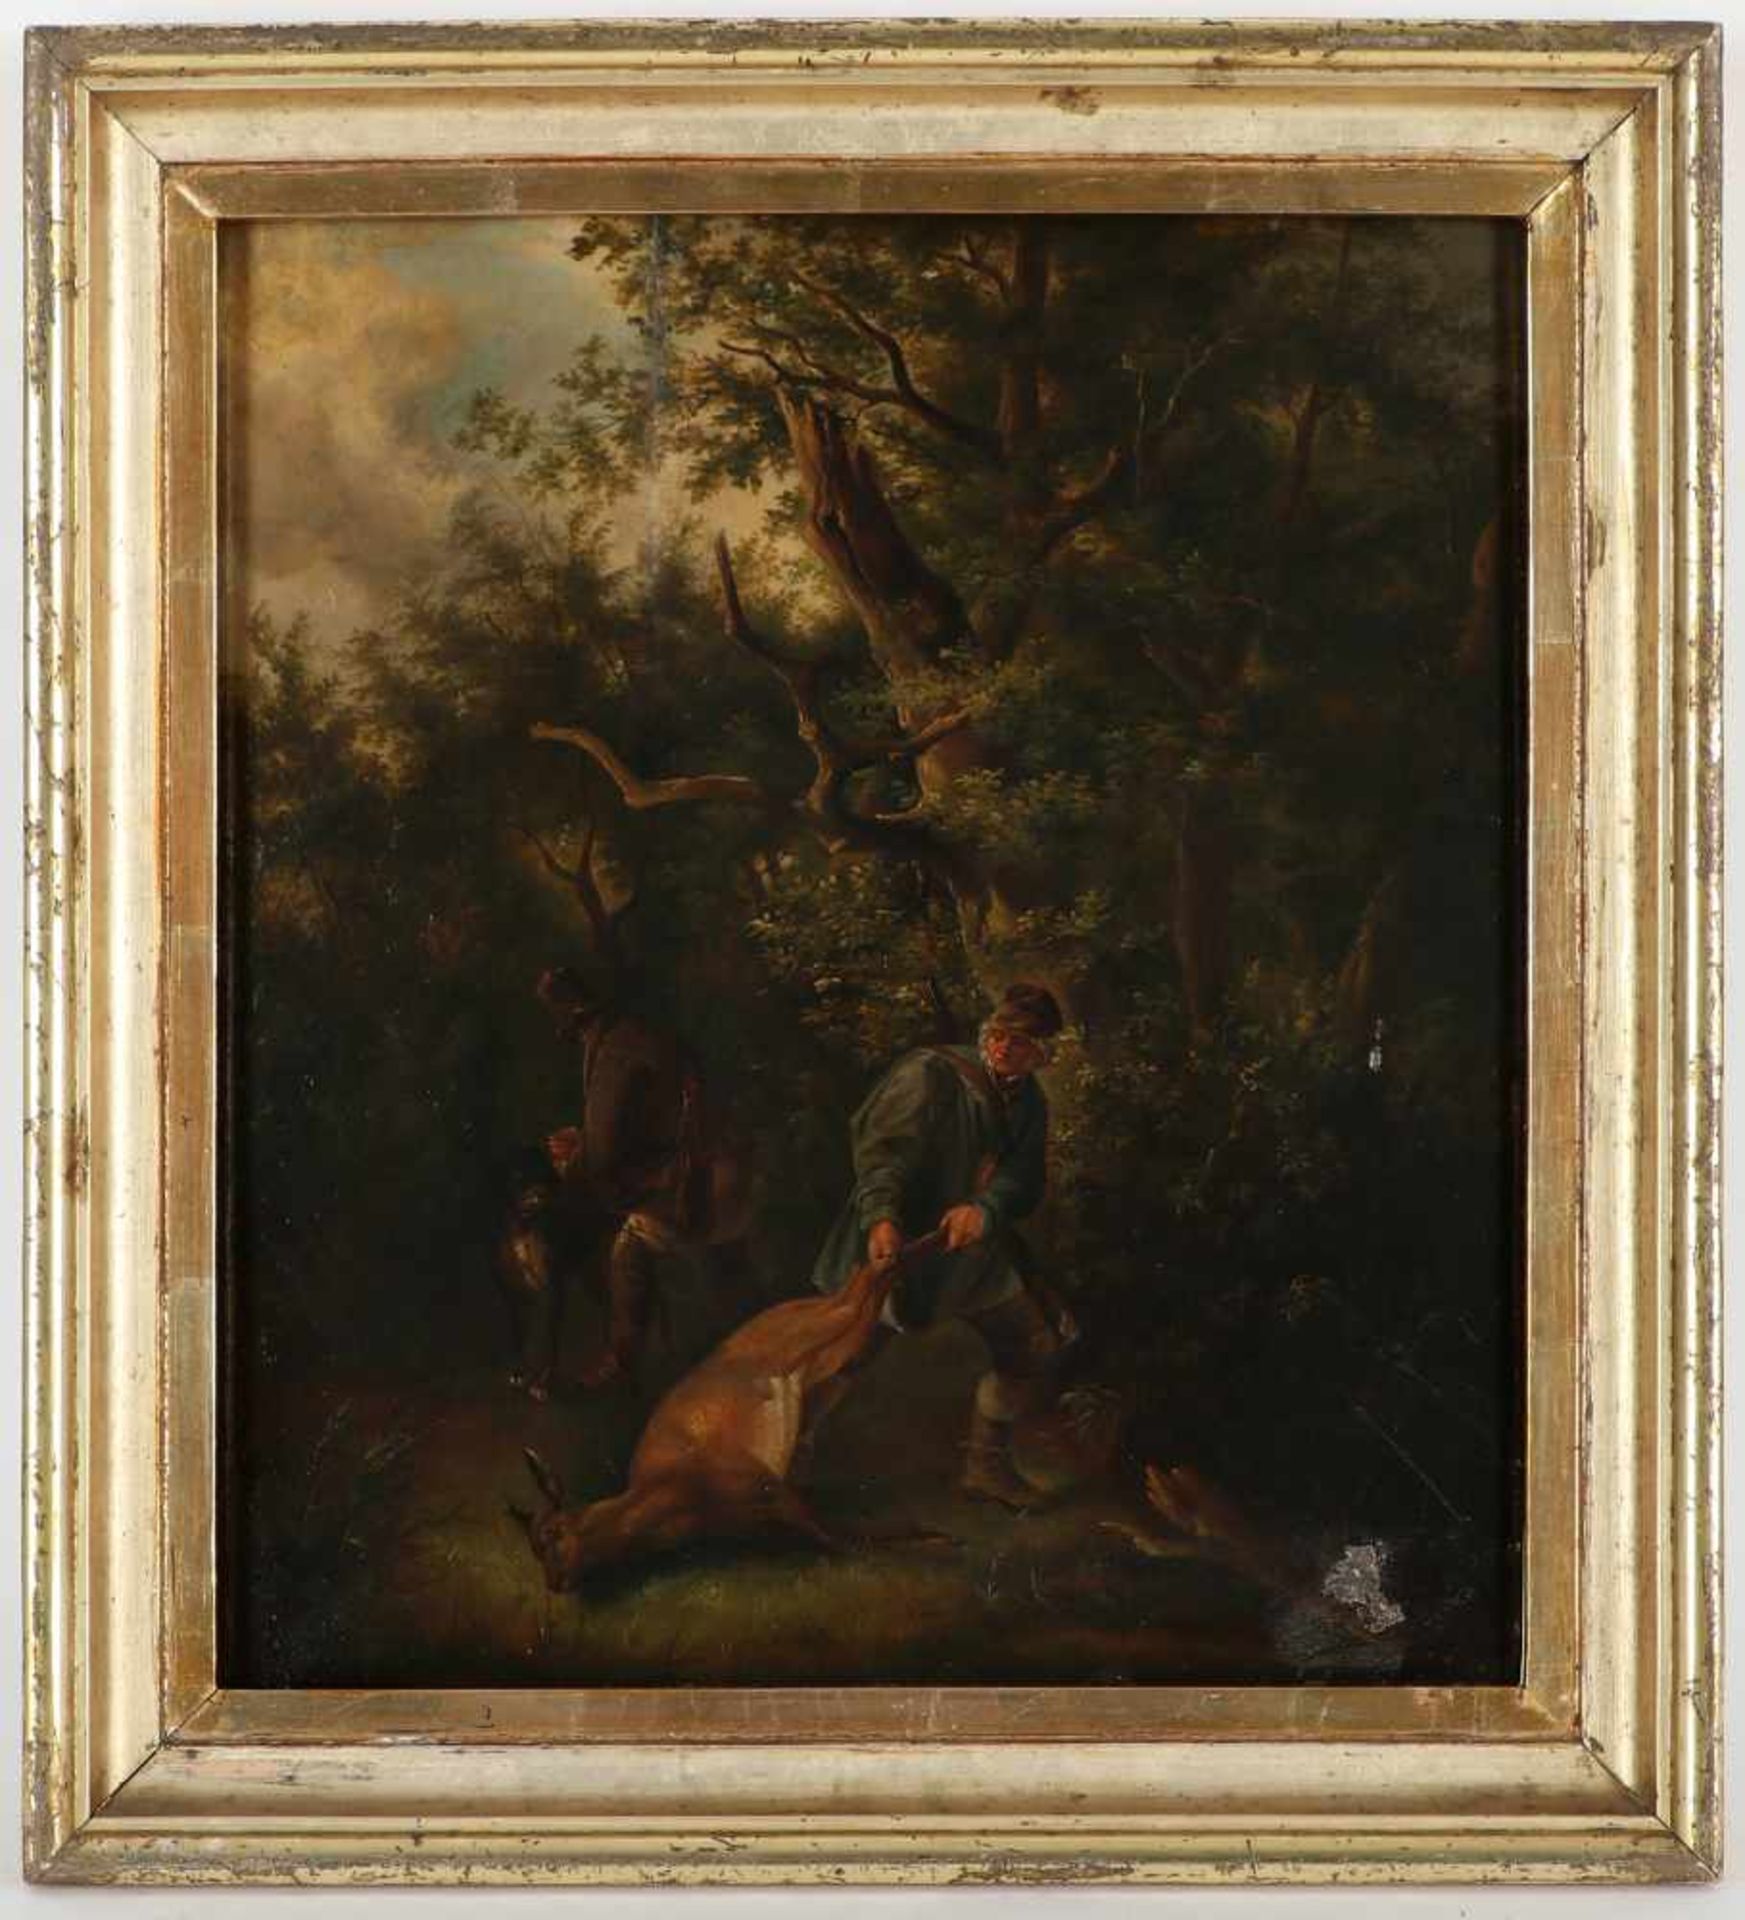 Unbekannter Künstler, 19.Jh.'Jäger mit erlegtem Wild', Öl/Holz, 40 x 33 cm, restauriert,